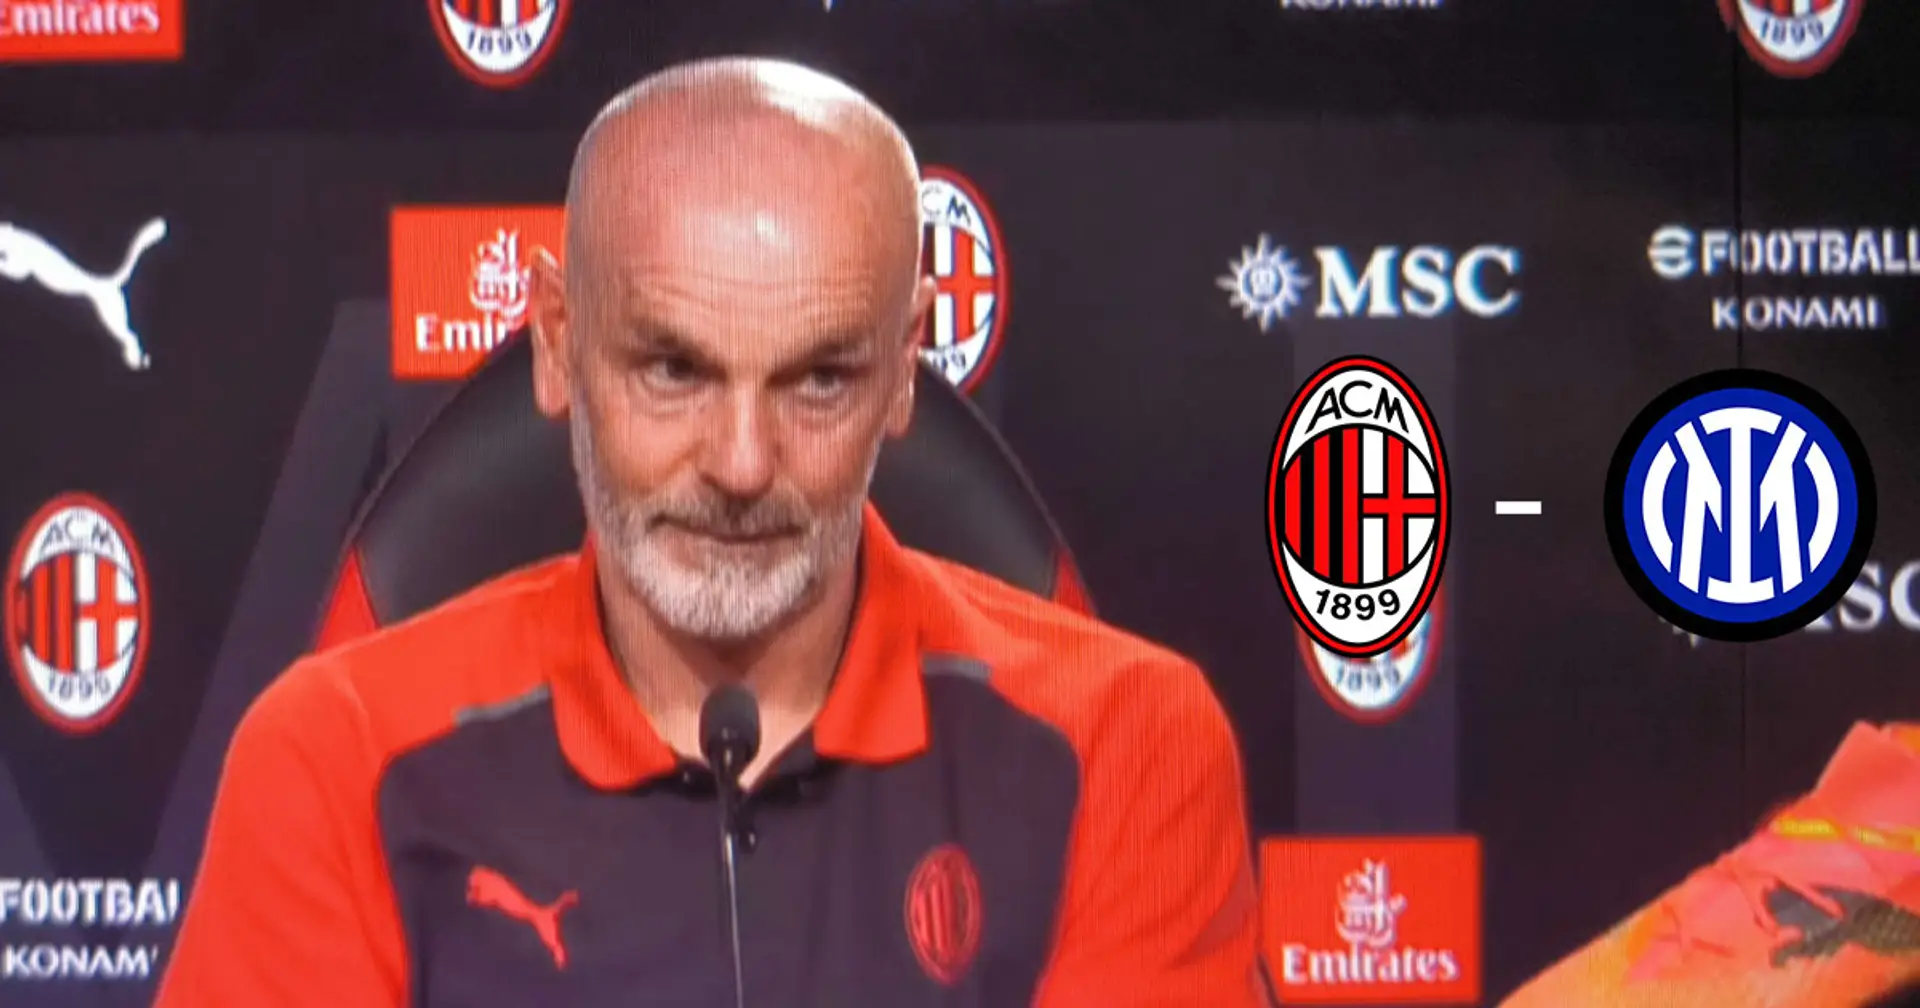 "Cosa chiedo al Milan? Di vincere domani": Pioli lancia la sfida all'Inter e chiede uno sforzo alla sua squadra